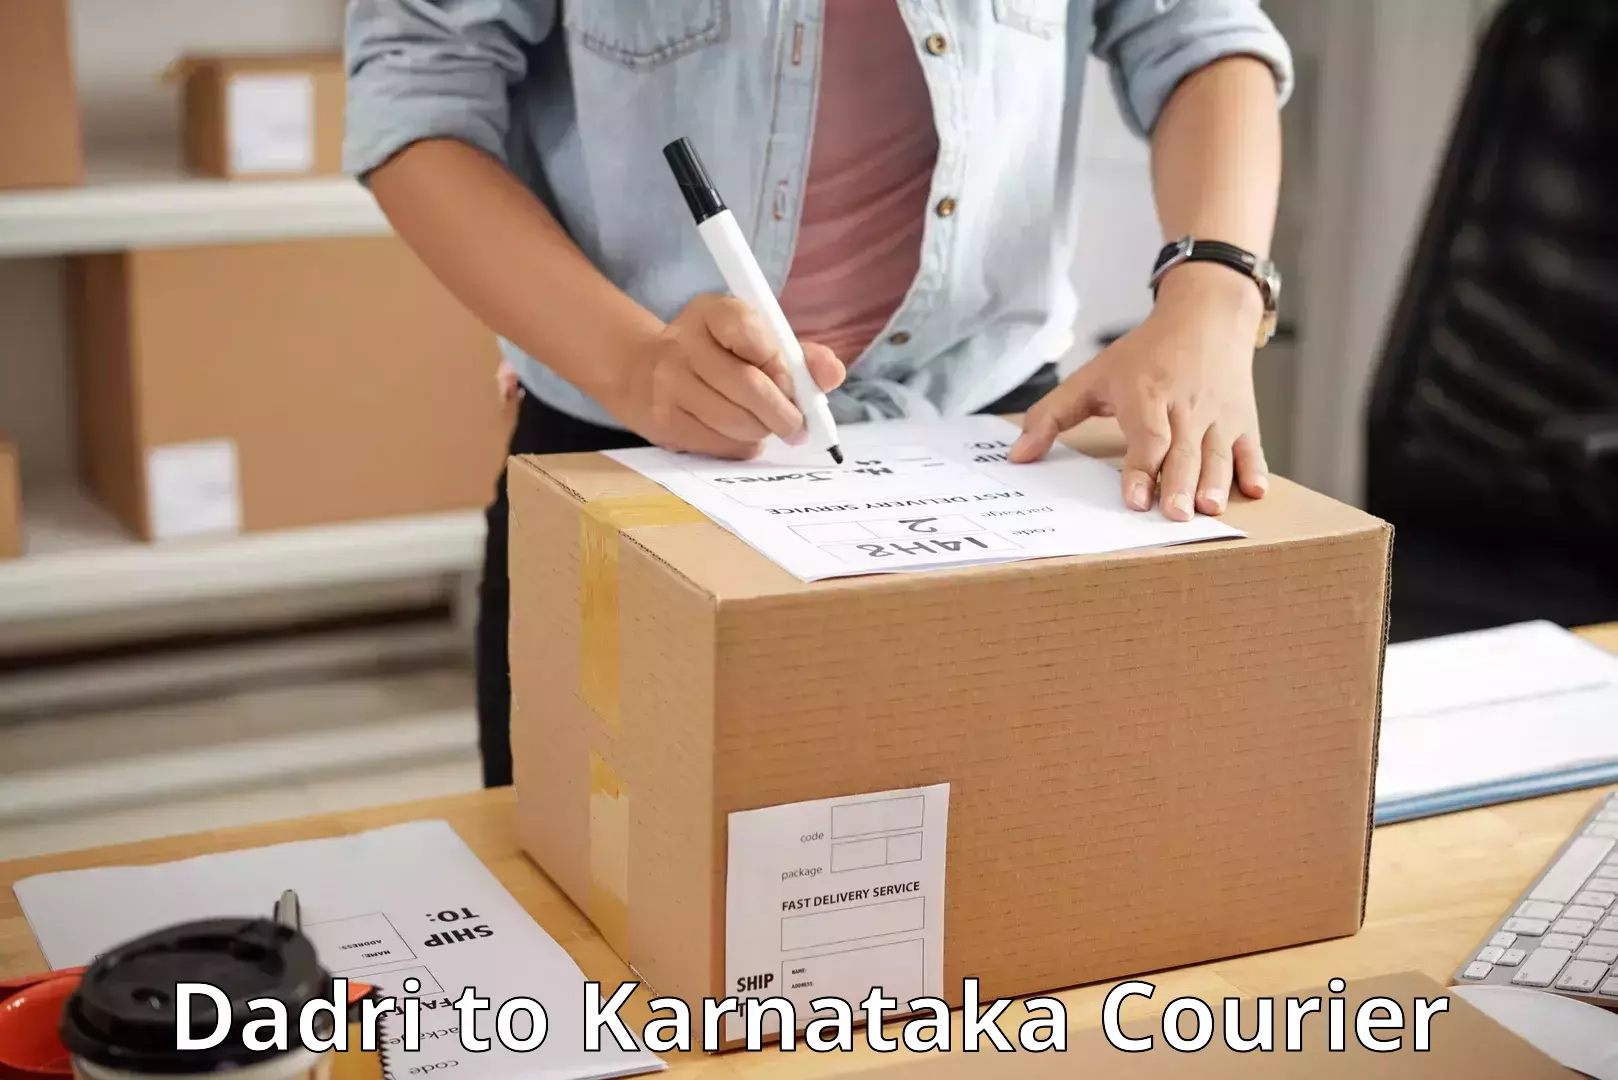 Urgent courier needs Dadri to Karnataka